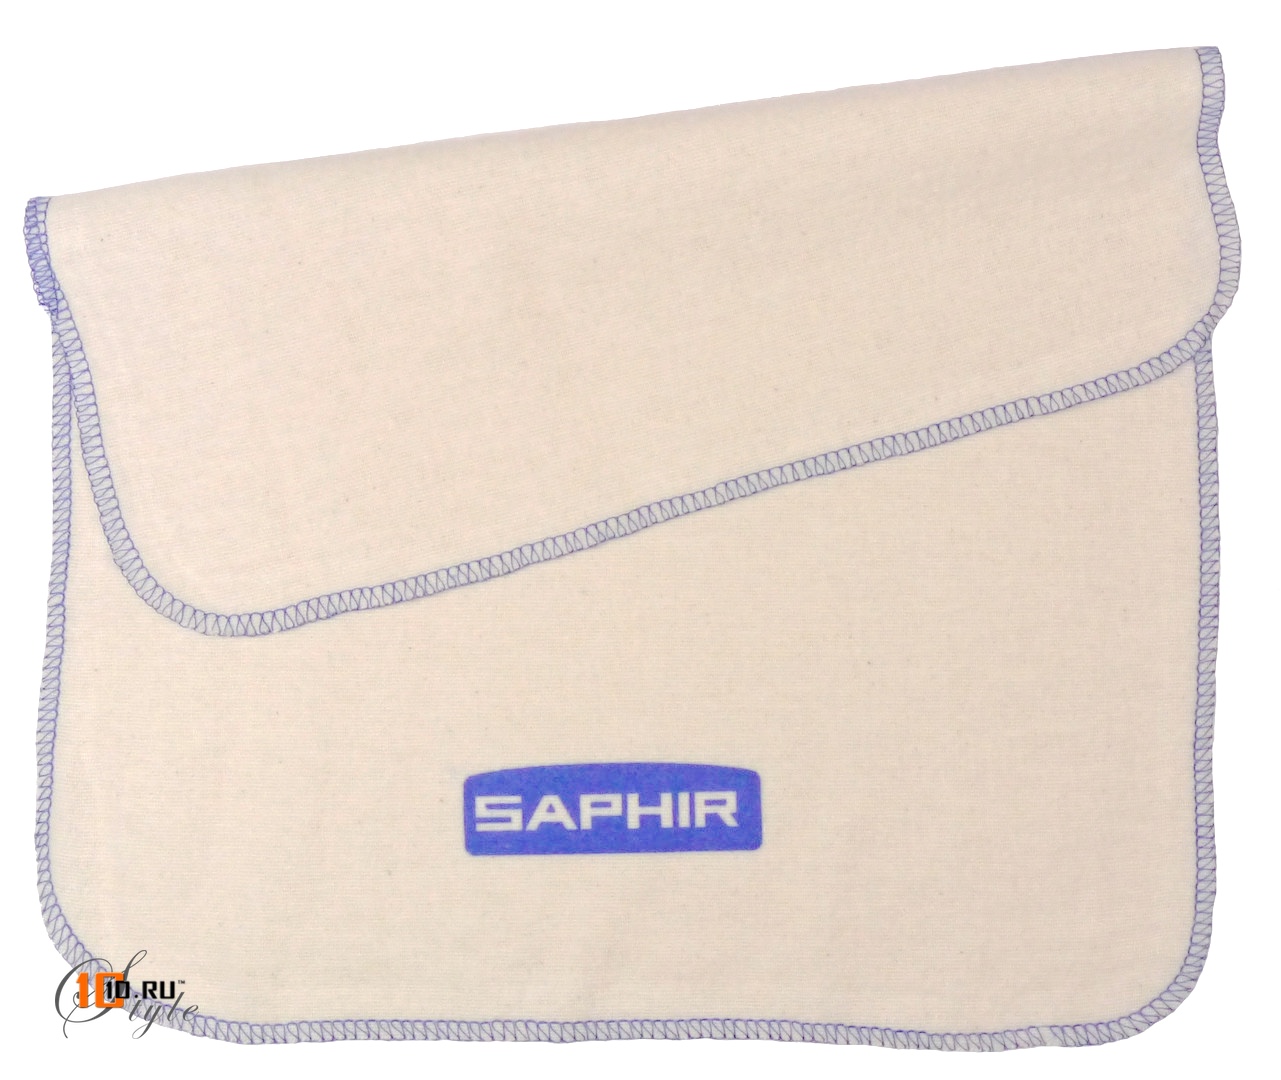 Хлопковая полировочная салфетка Saphir для обуви большая 30 х 38 см с логотипом